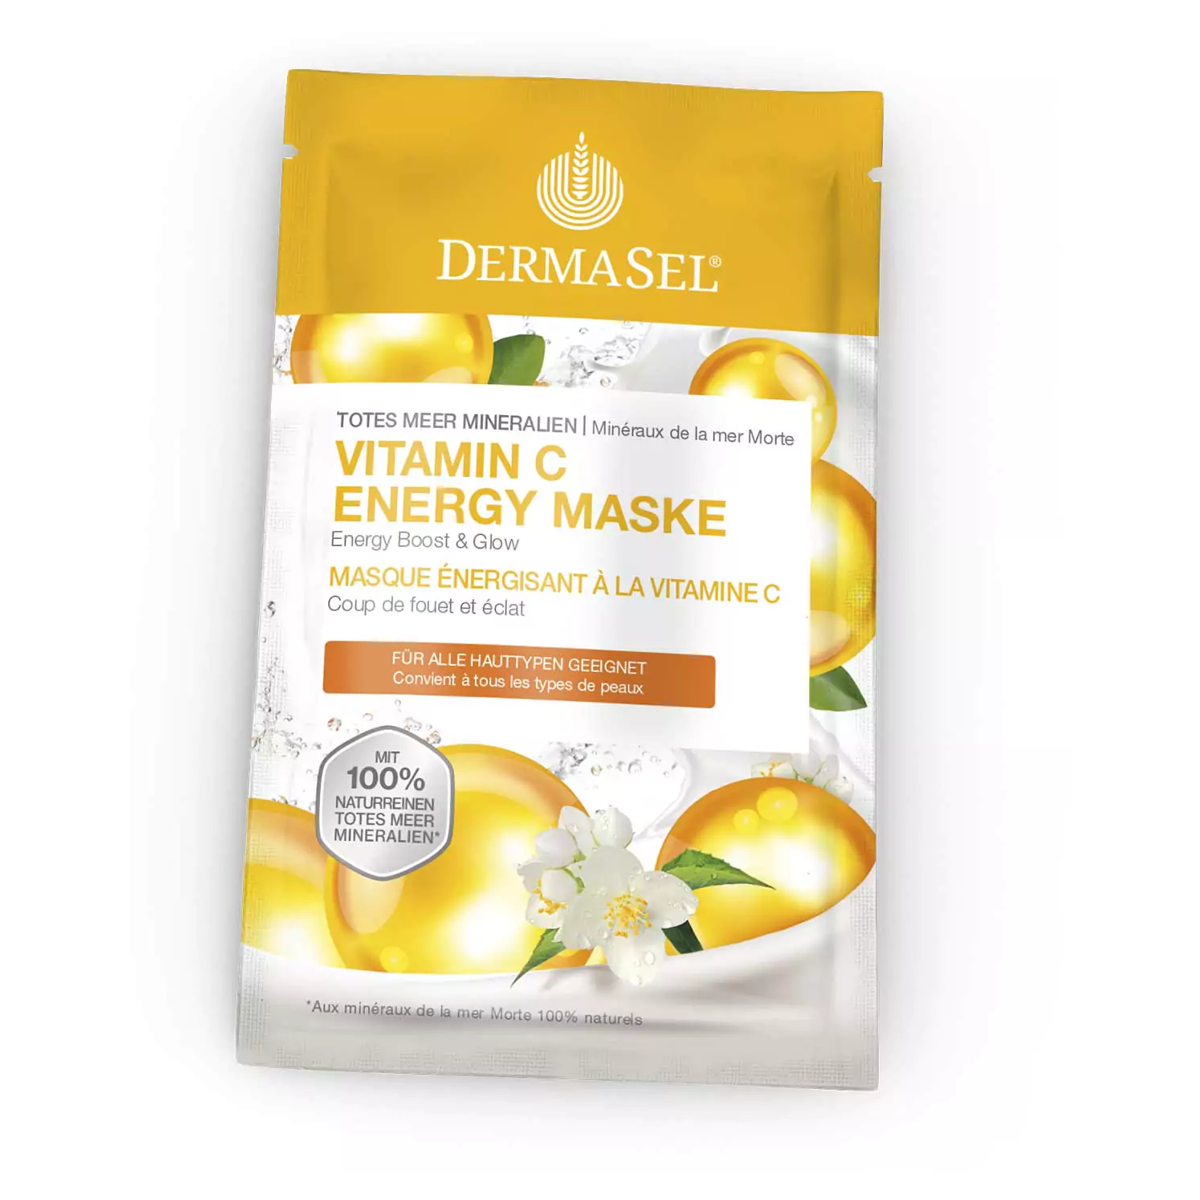 Dermasel_Maske_Vitamin_C_Energie_online_kaufen